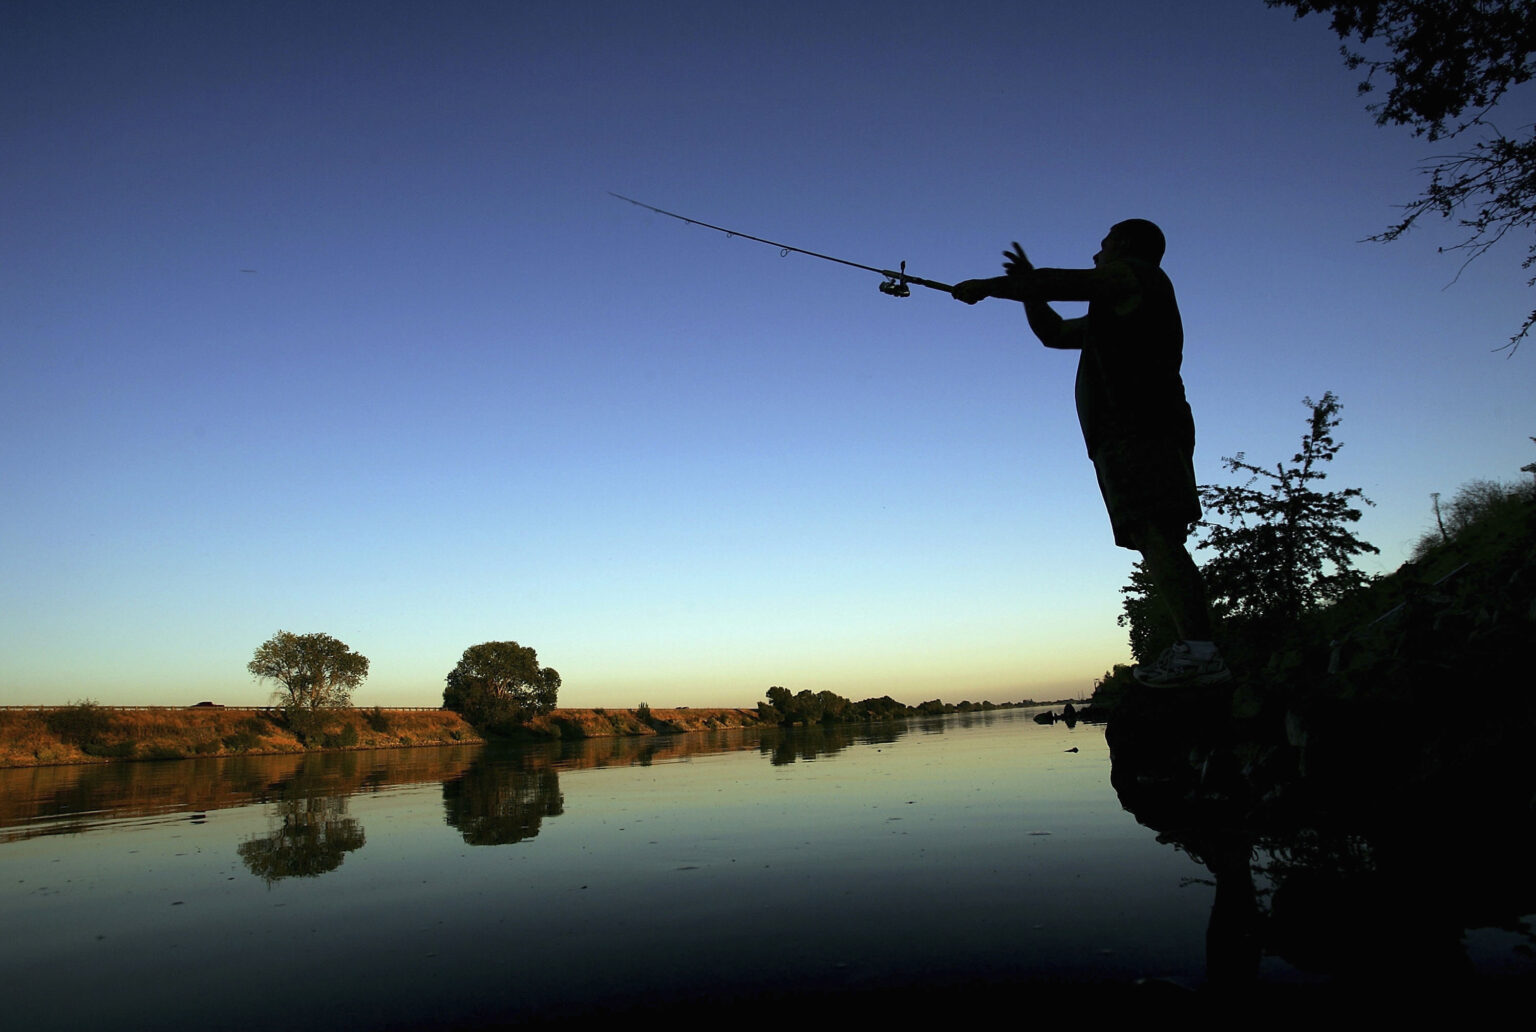  A fisherman casts his line into the Sacramento River in the Sacramento-San Joaquin River Delta on September 29, 2005 south of Sacramento, California.